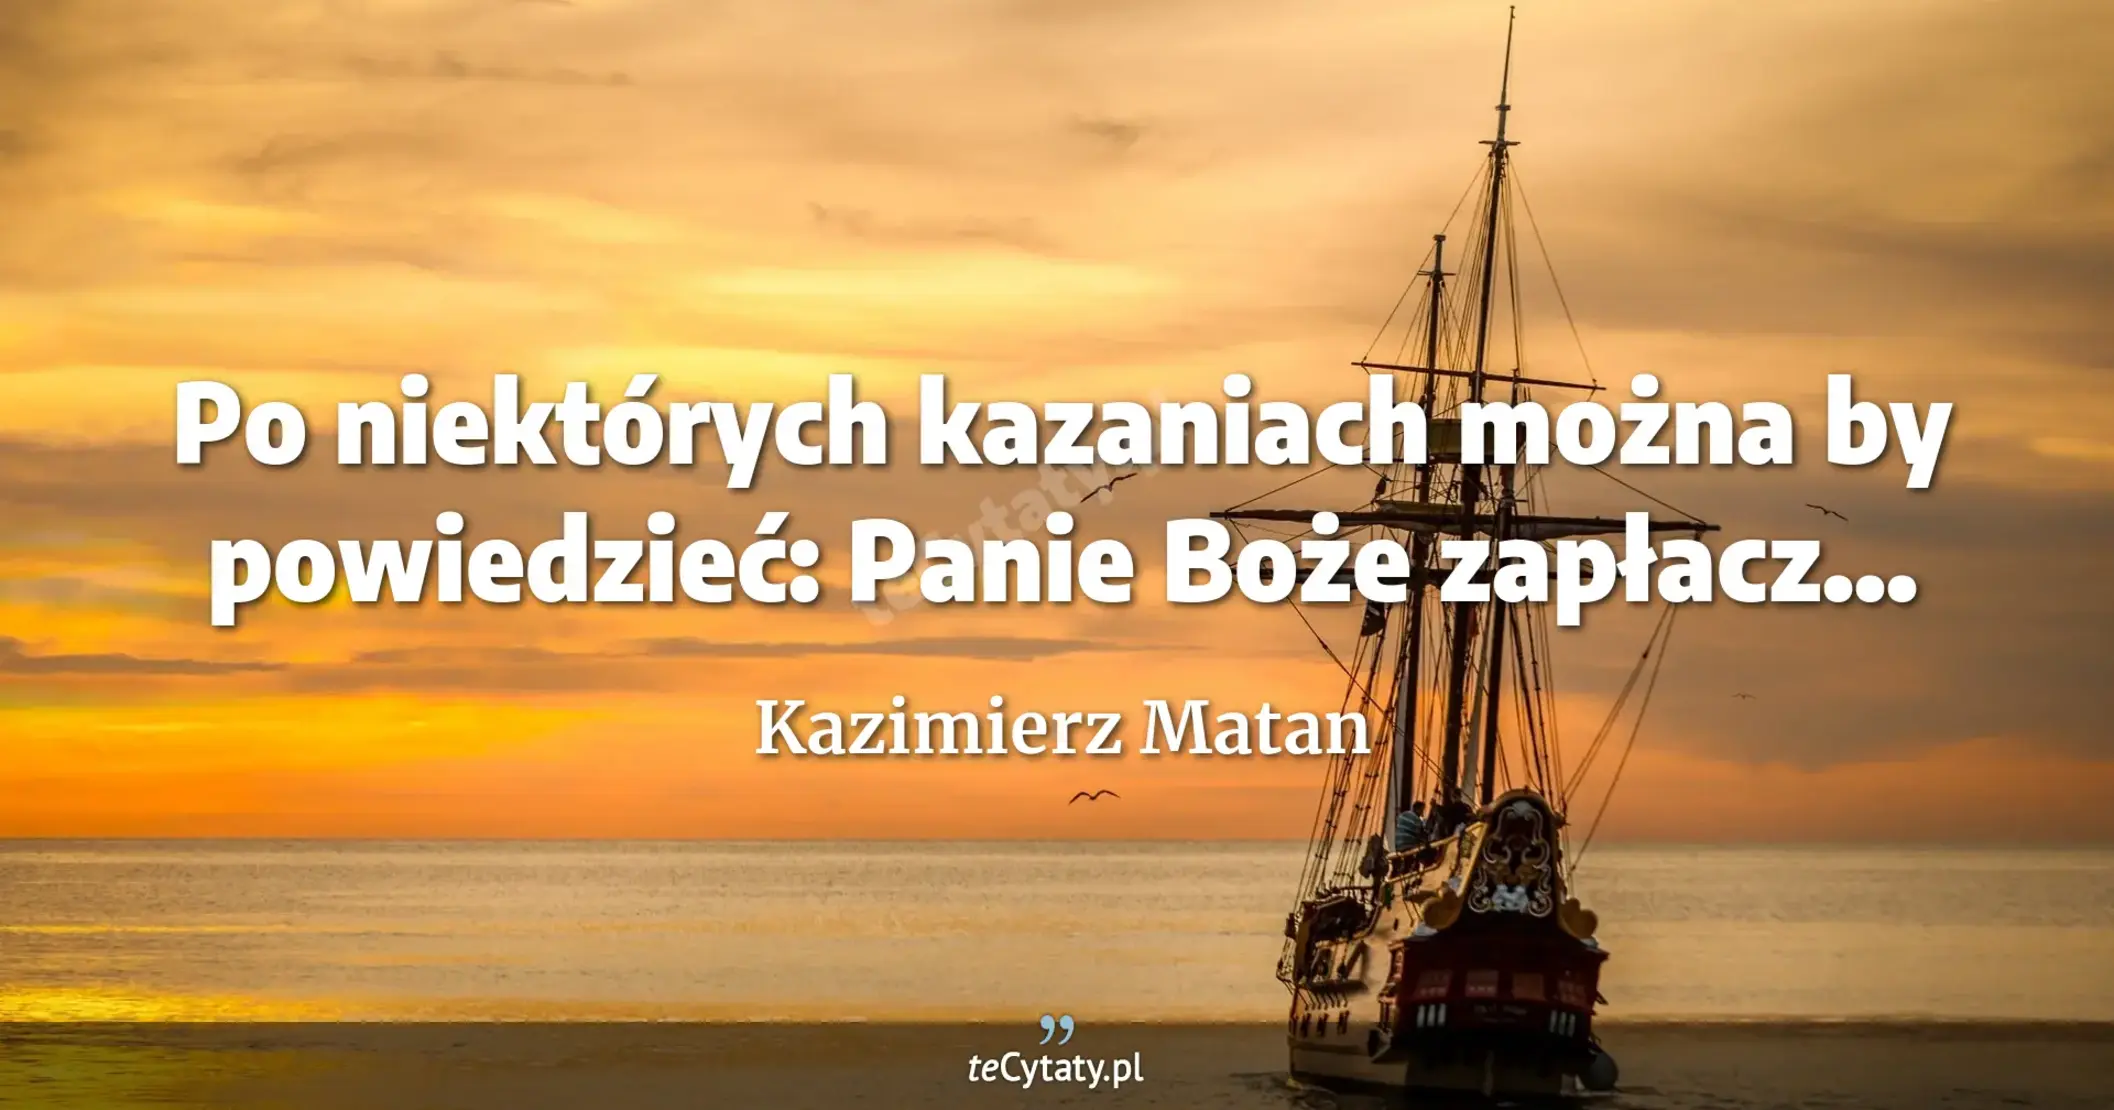 Po niektórych kazaniach można by powiedzieć: Panie Boże zapłacz... - Kazimierz Matan